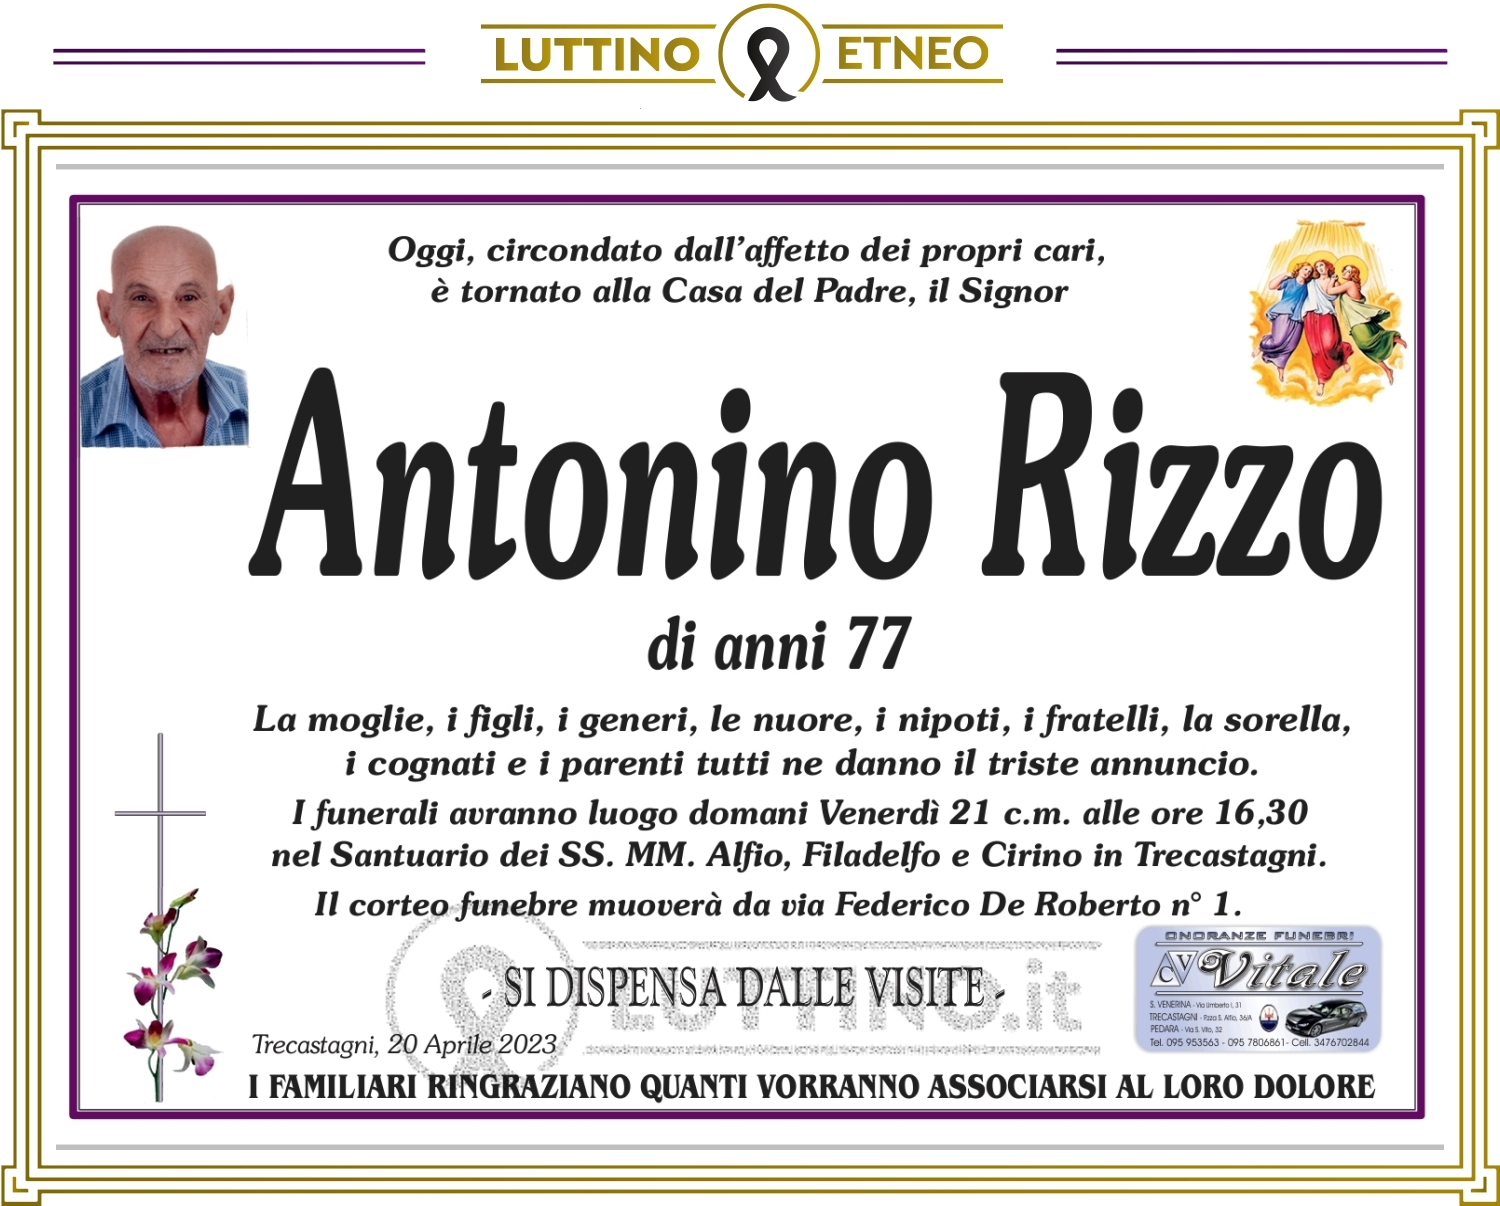 Antonino Rizzo 